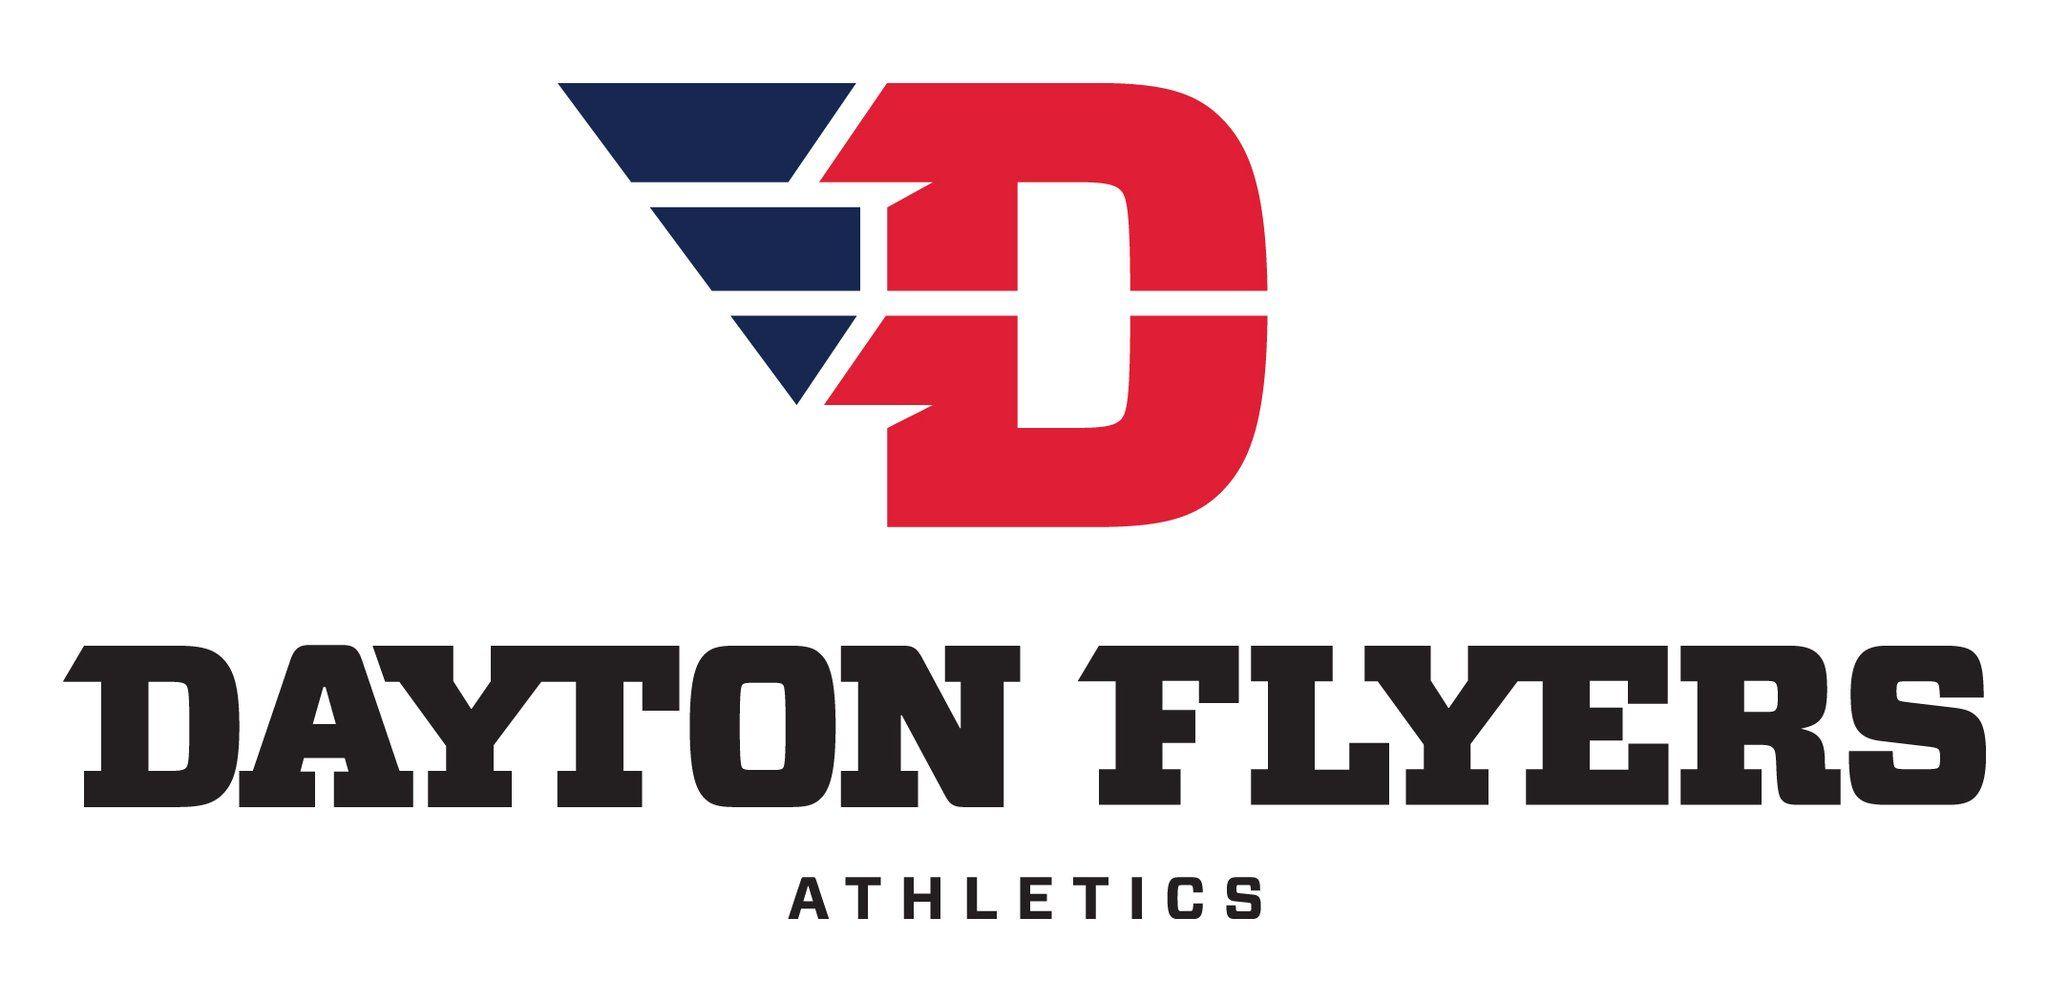 Dayton Logo - University of dayton Logos